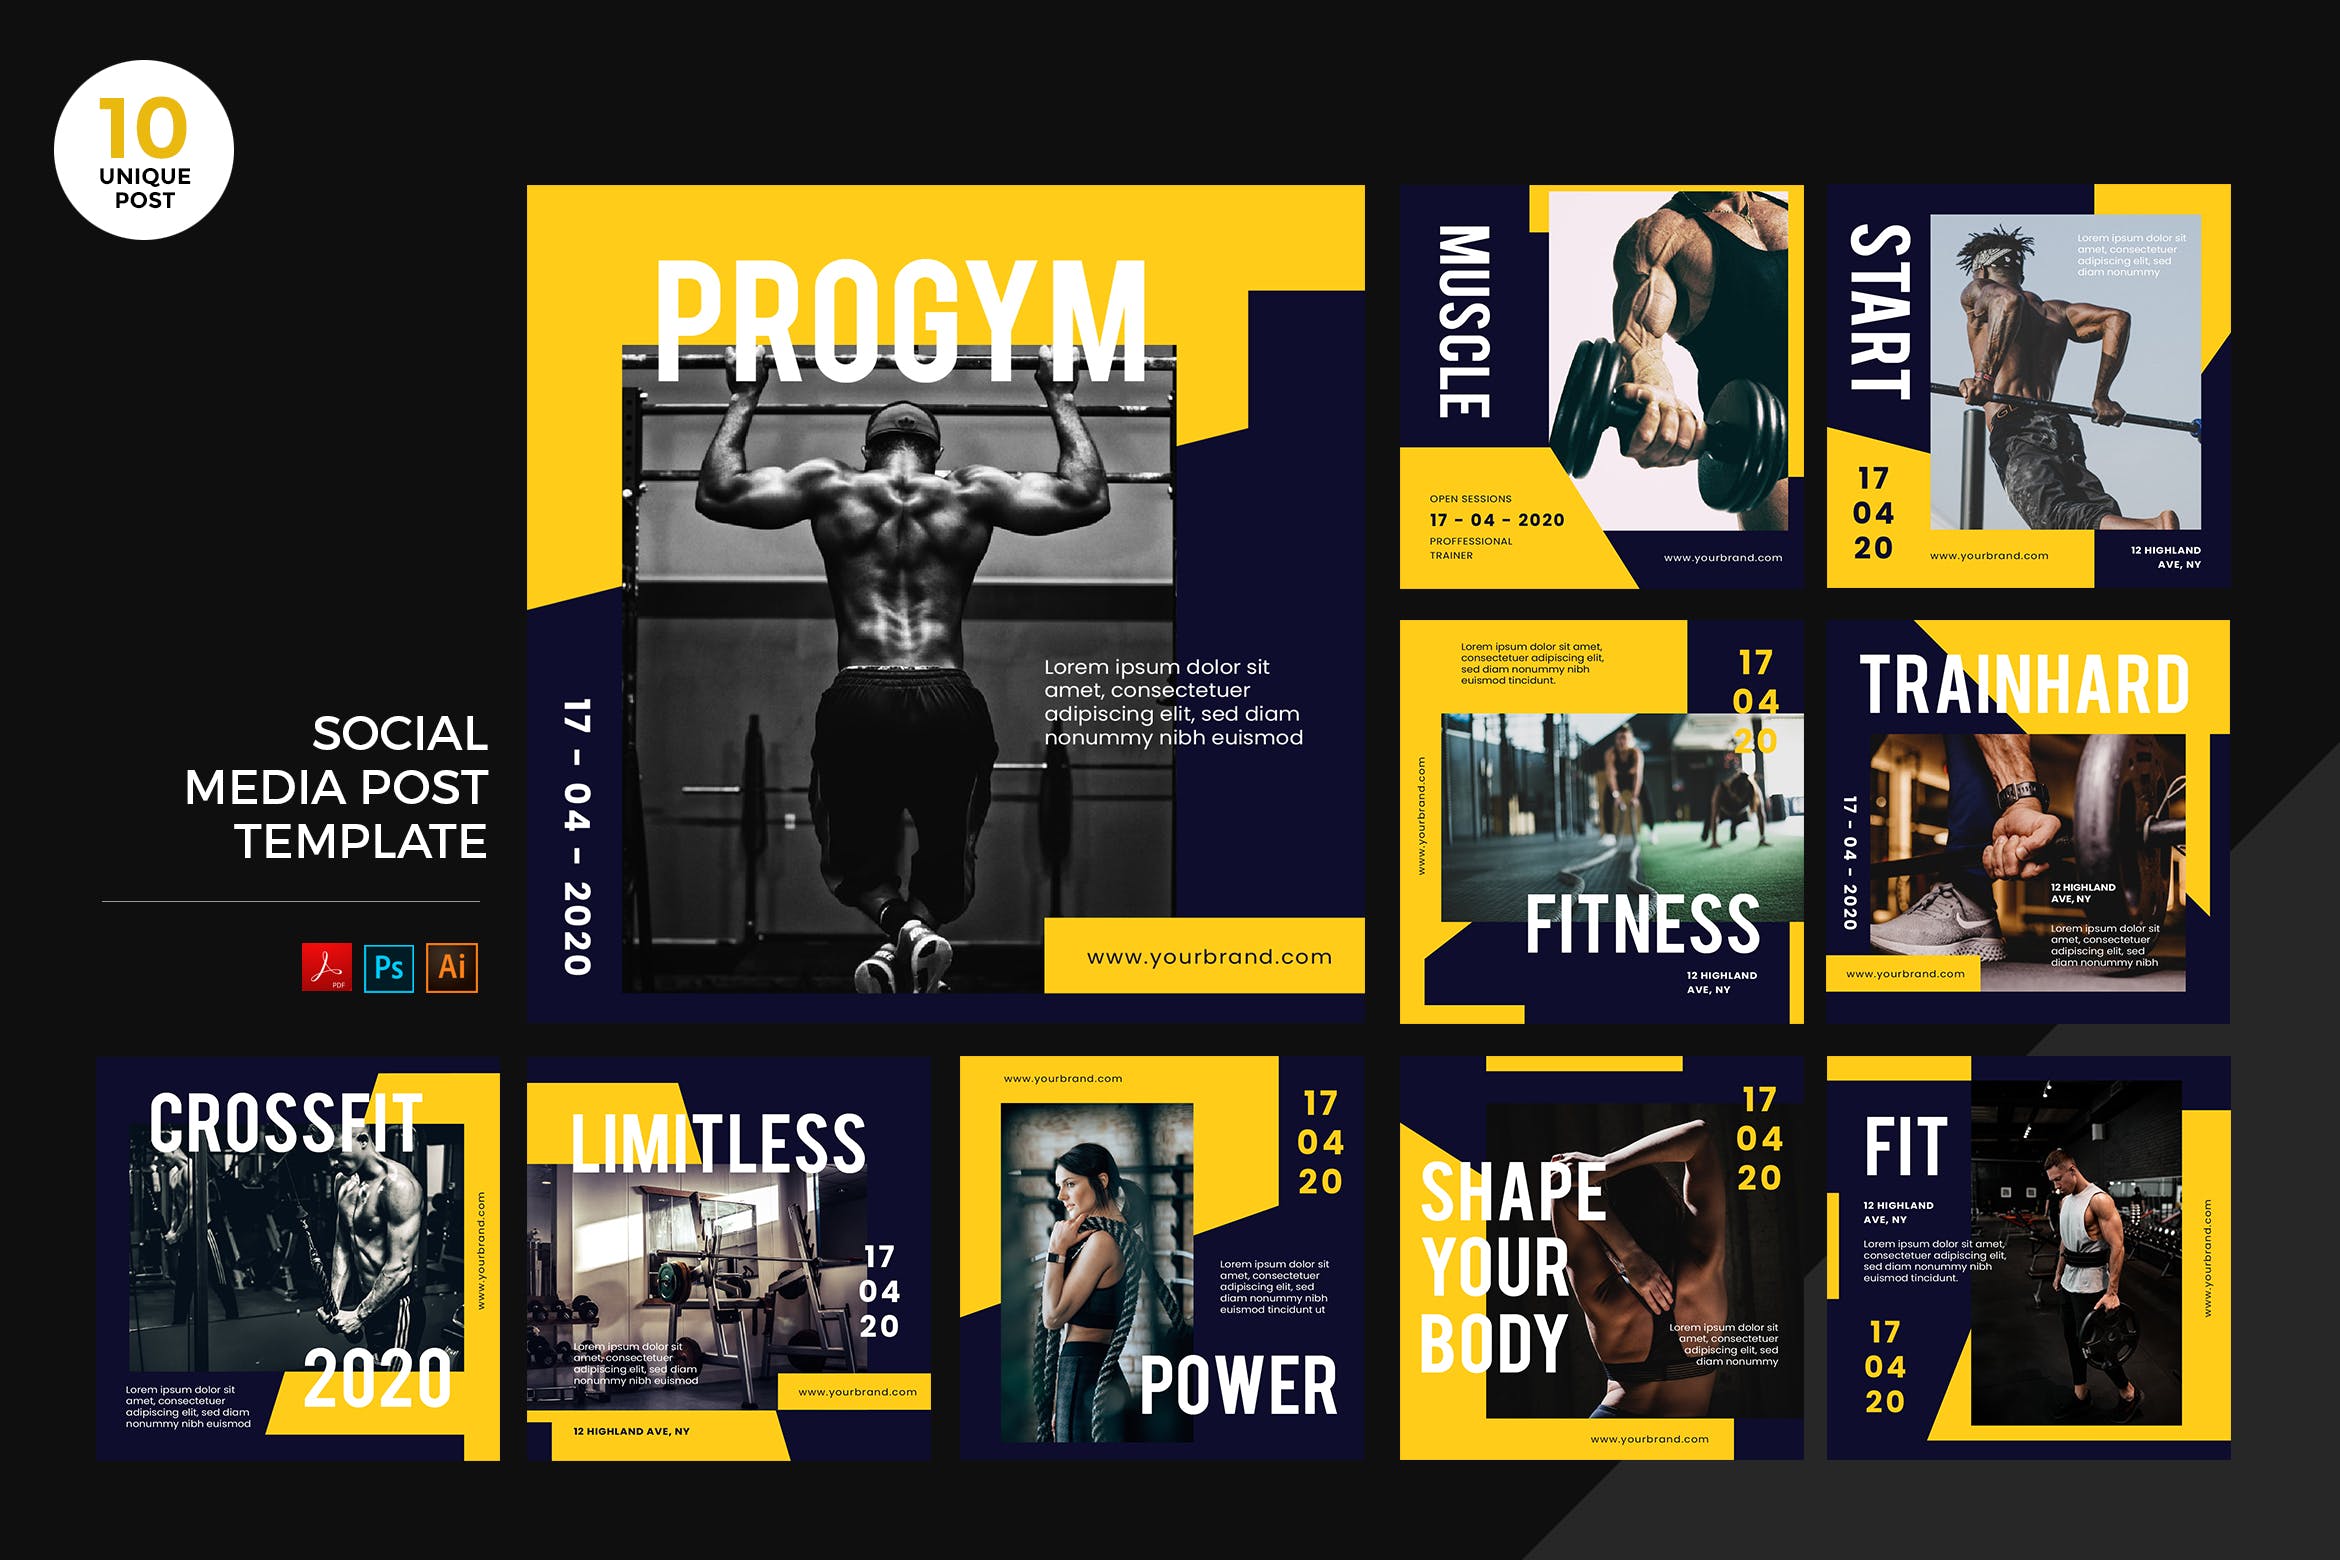 运动健身主题社交媒体设计素材包 Gym Healthy Lifestyle Social Media Kit PSD & AI插图